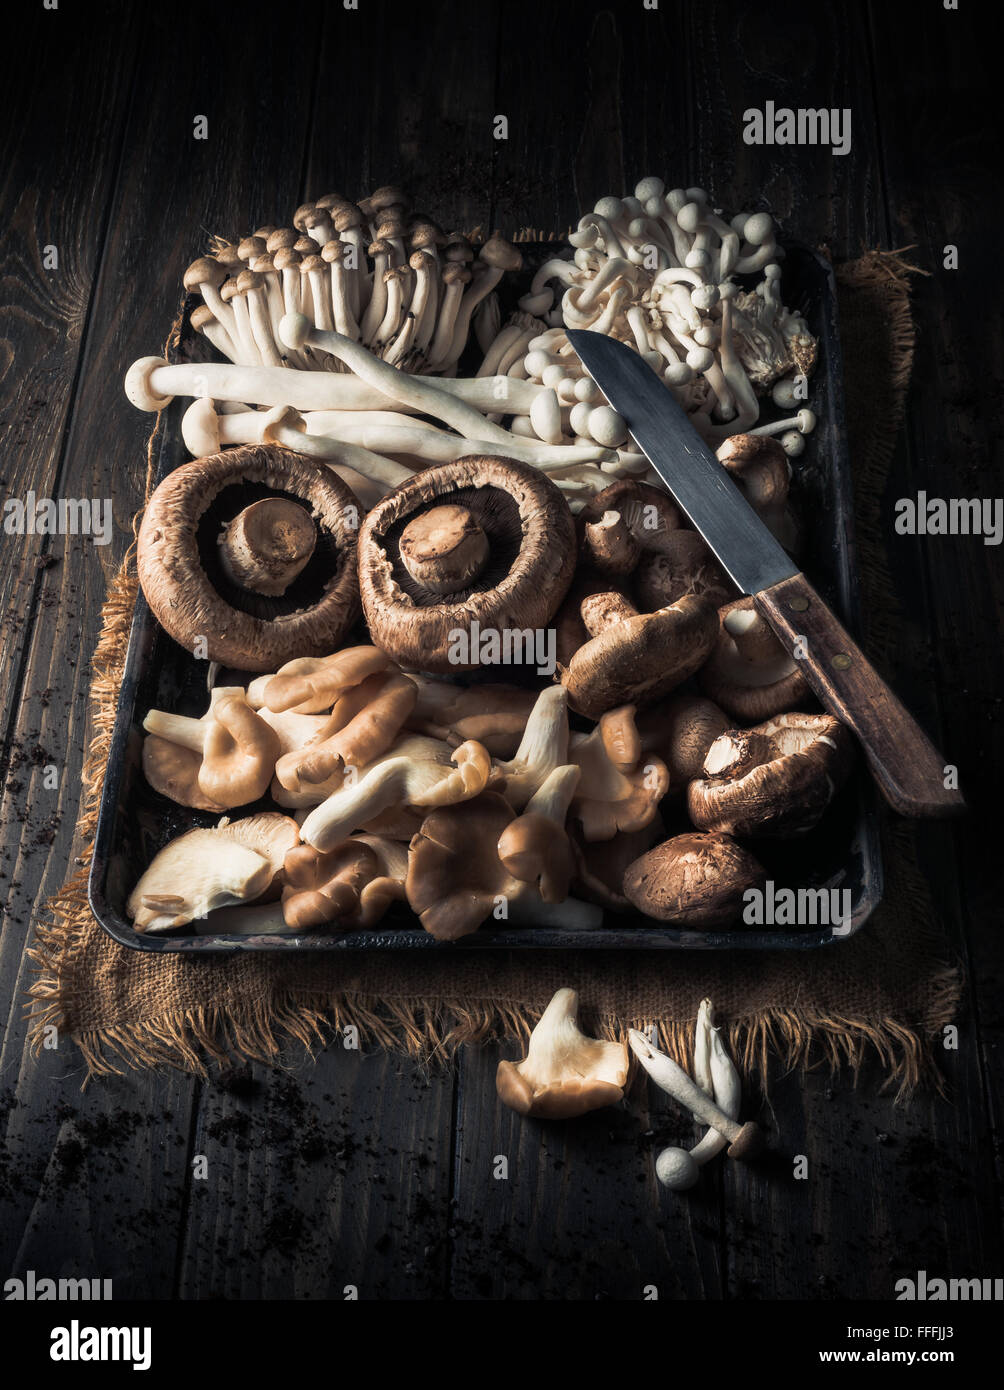 Gemischte Pilze im Tray auf Holztisch Stockfoto